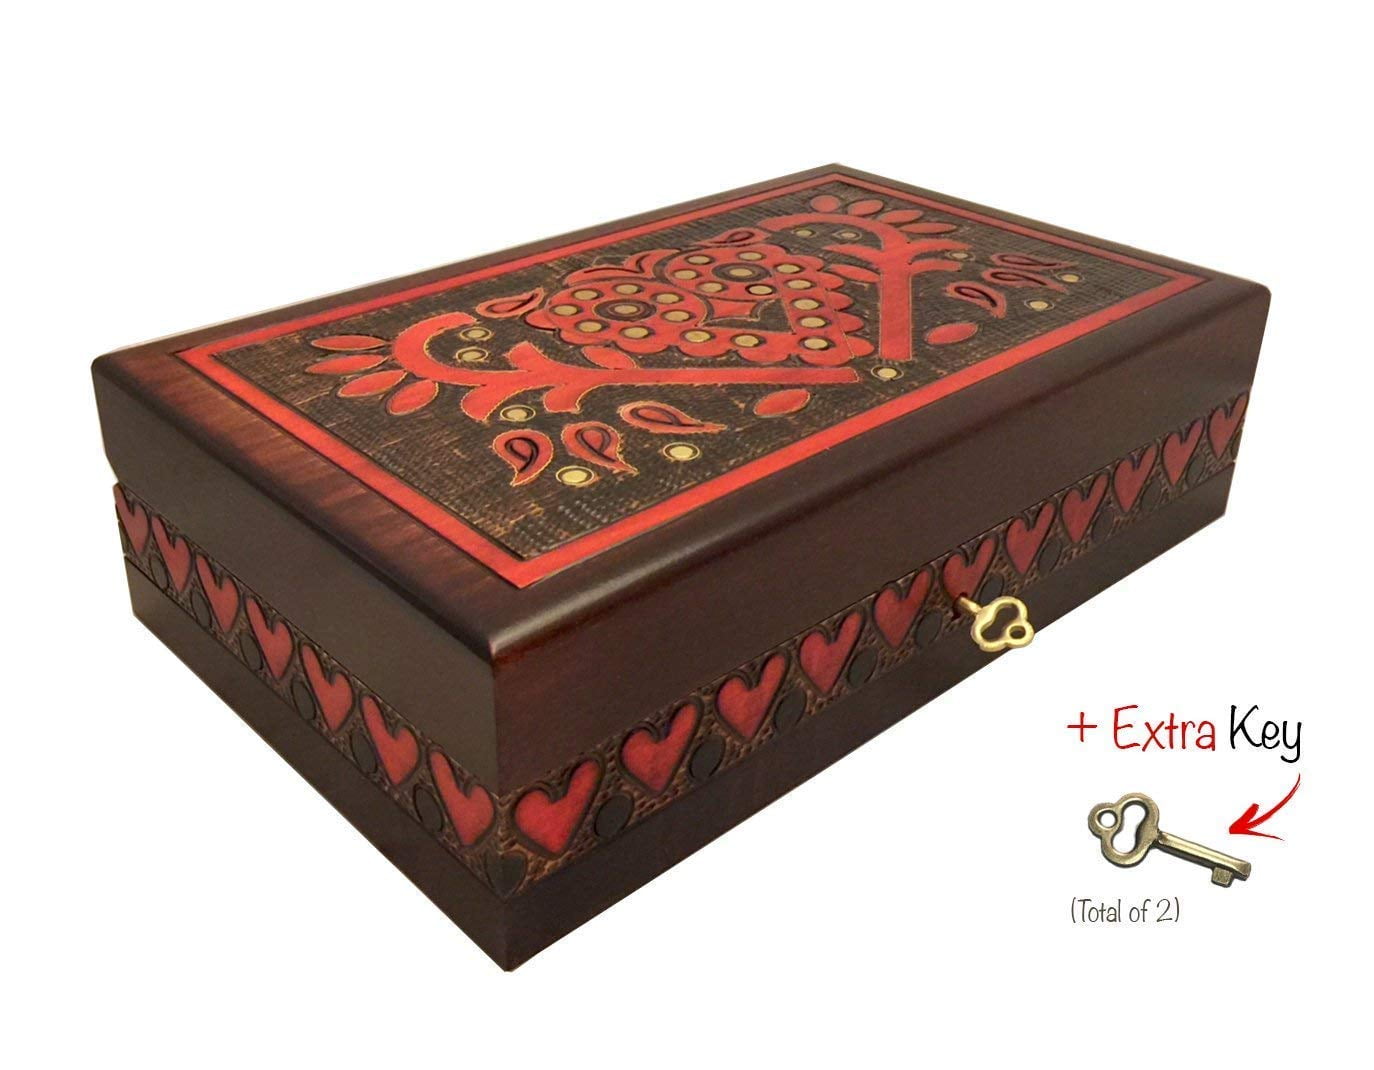 Finished Hardwood Jewelry Box CafePress Colonel Tile Insignia Box Keepsake Box Velvet Lined Memento Box 